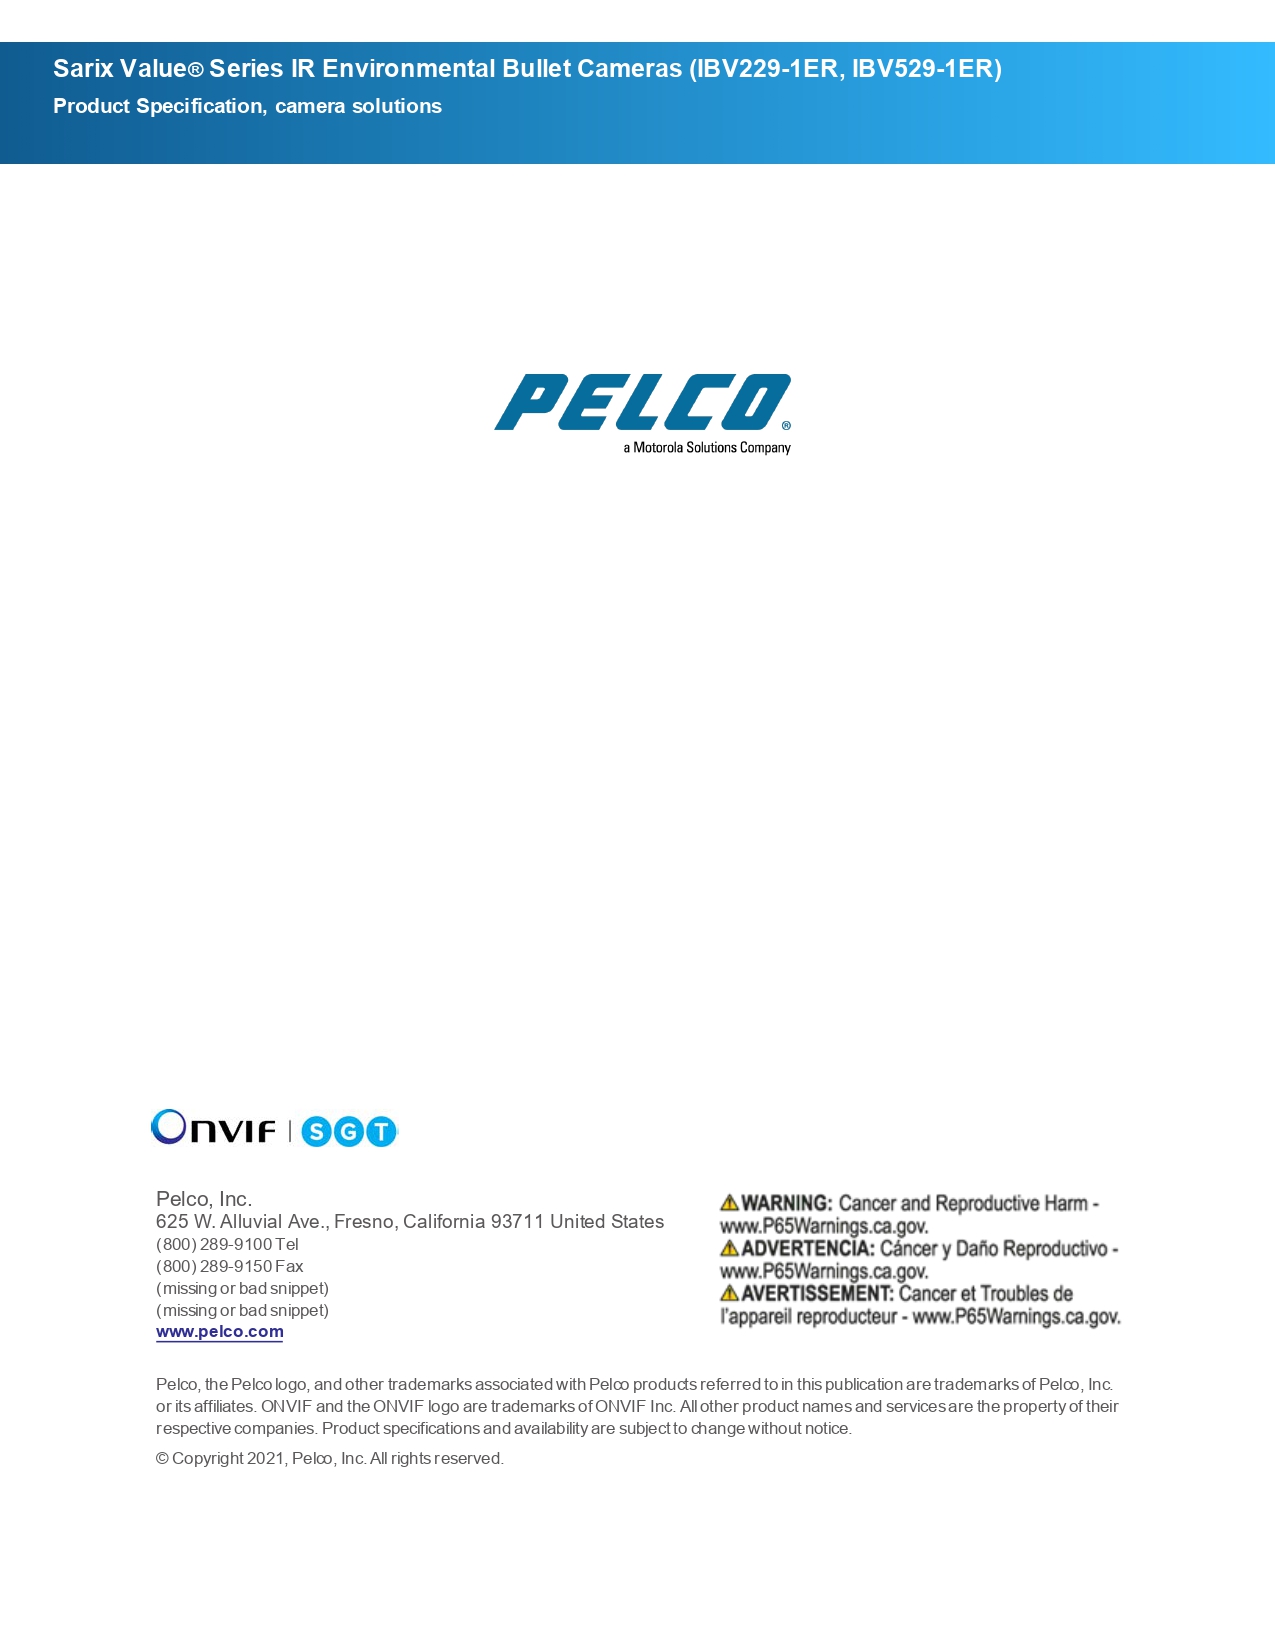 Pelco IBV529-1ER